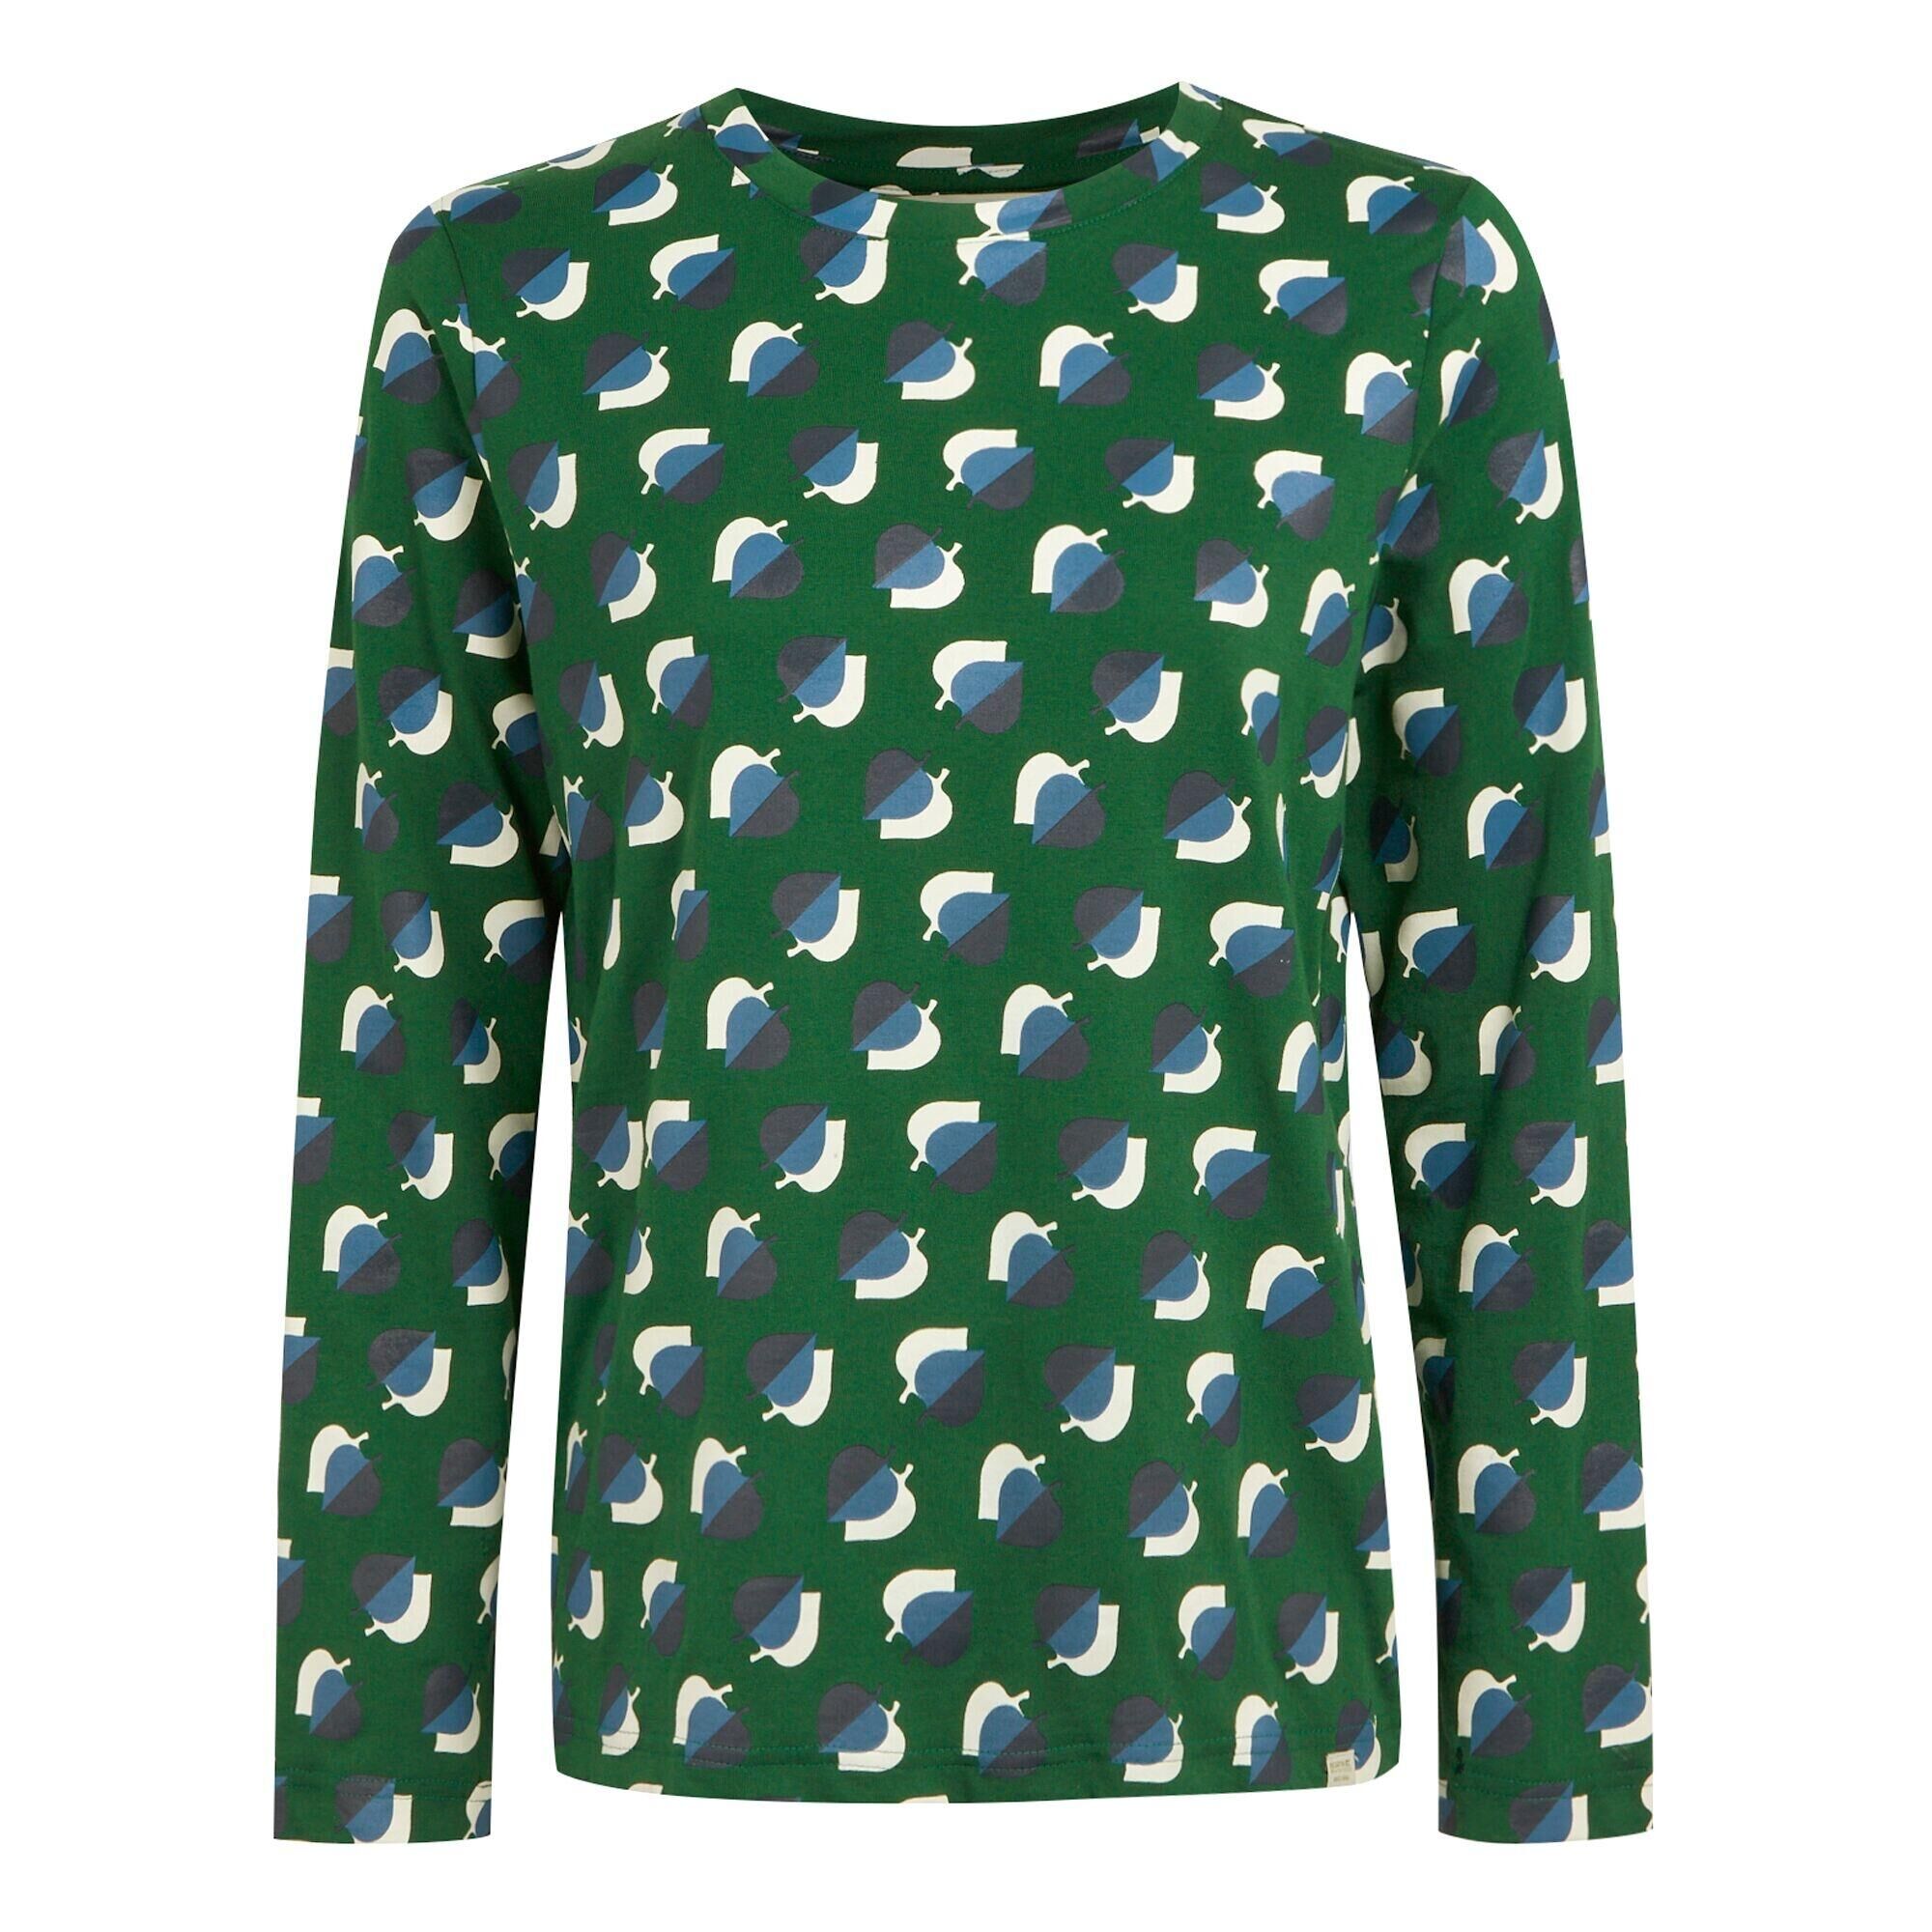 REGATTA Womens/Ladies Orla Kiely Leaf Print LongSleeved TShirt (Shadow Elm Emerald)